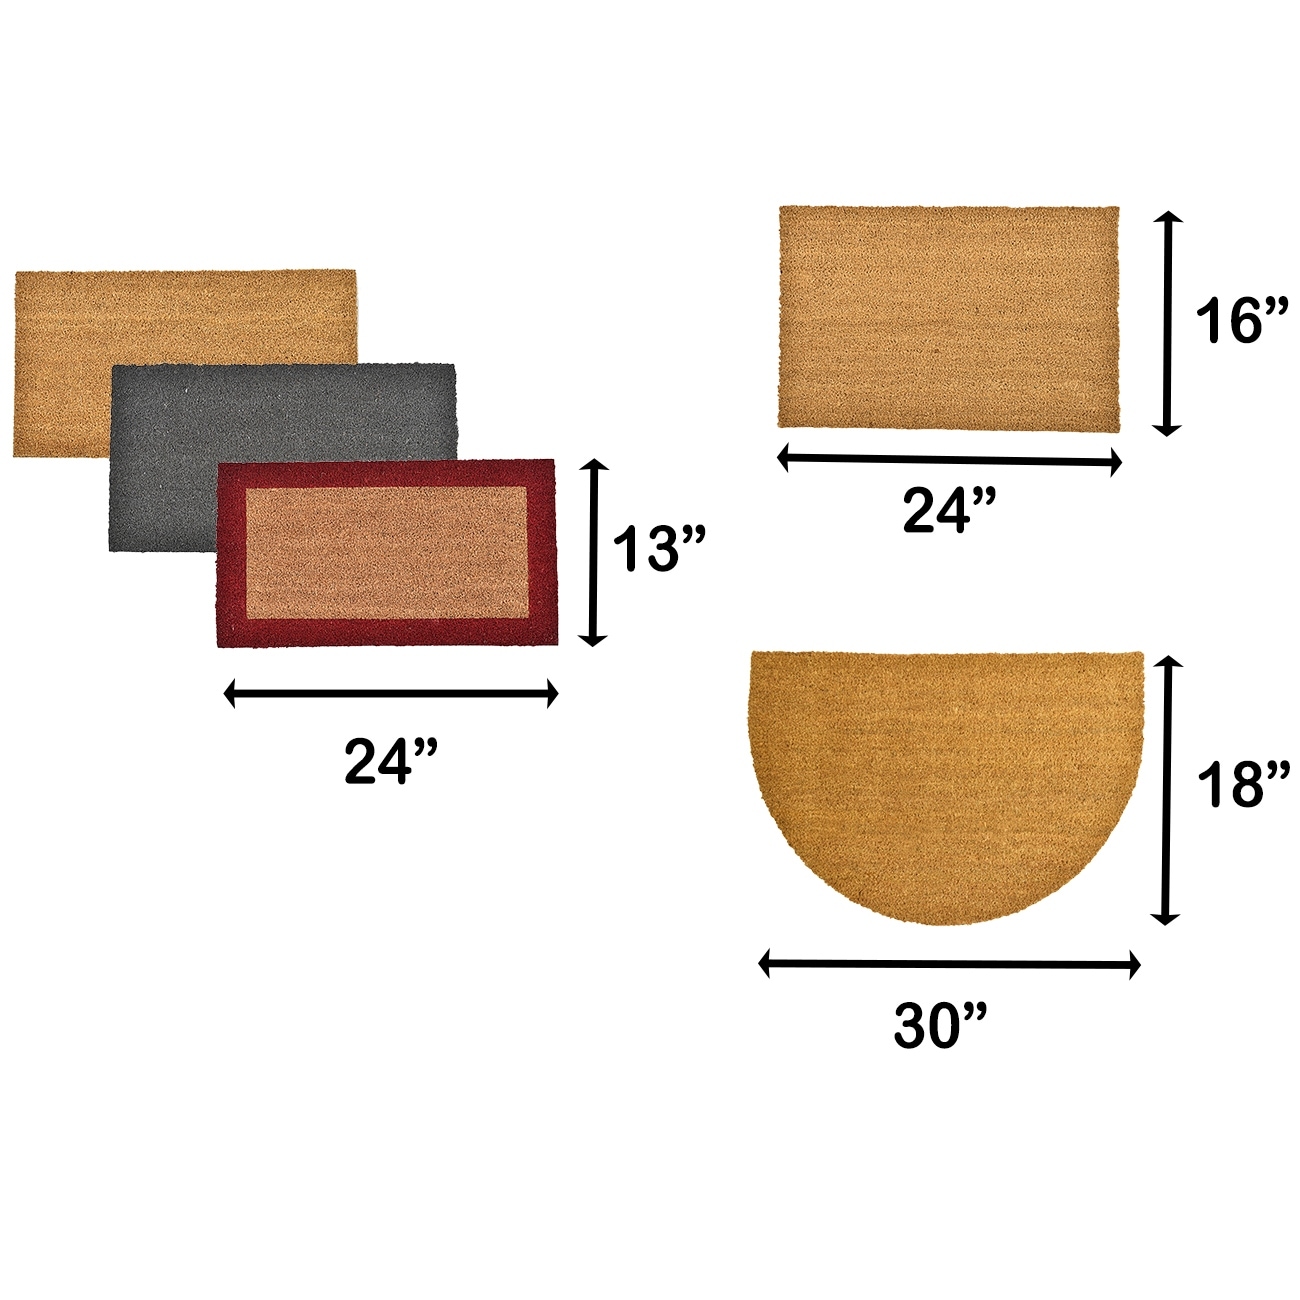 Envelor Coco Coir Door Mat Hand-Woven Coir Loop Welcome Doormat - On Sale -  Bed Bath & Beyond - 32652606